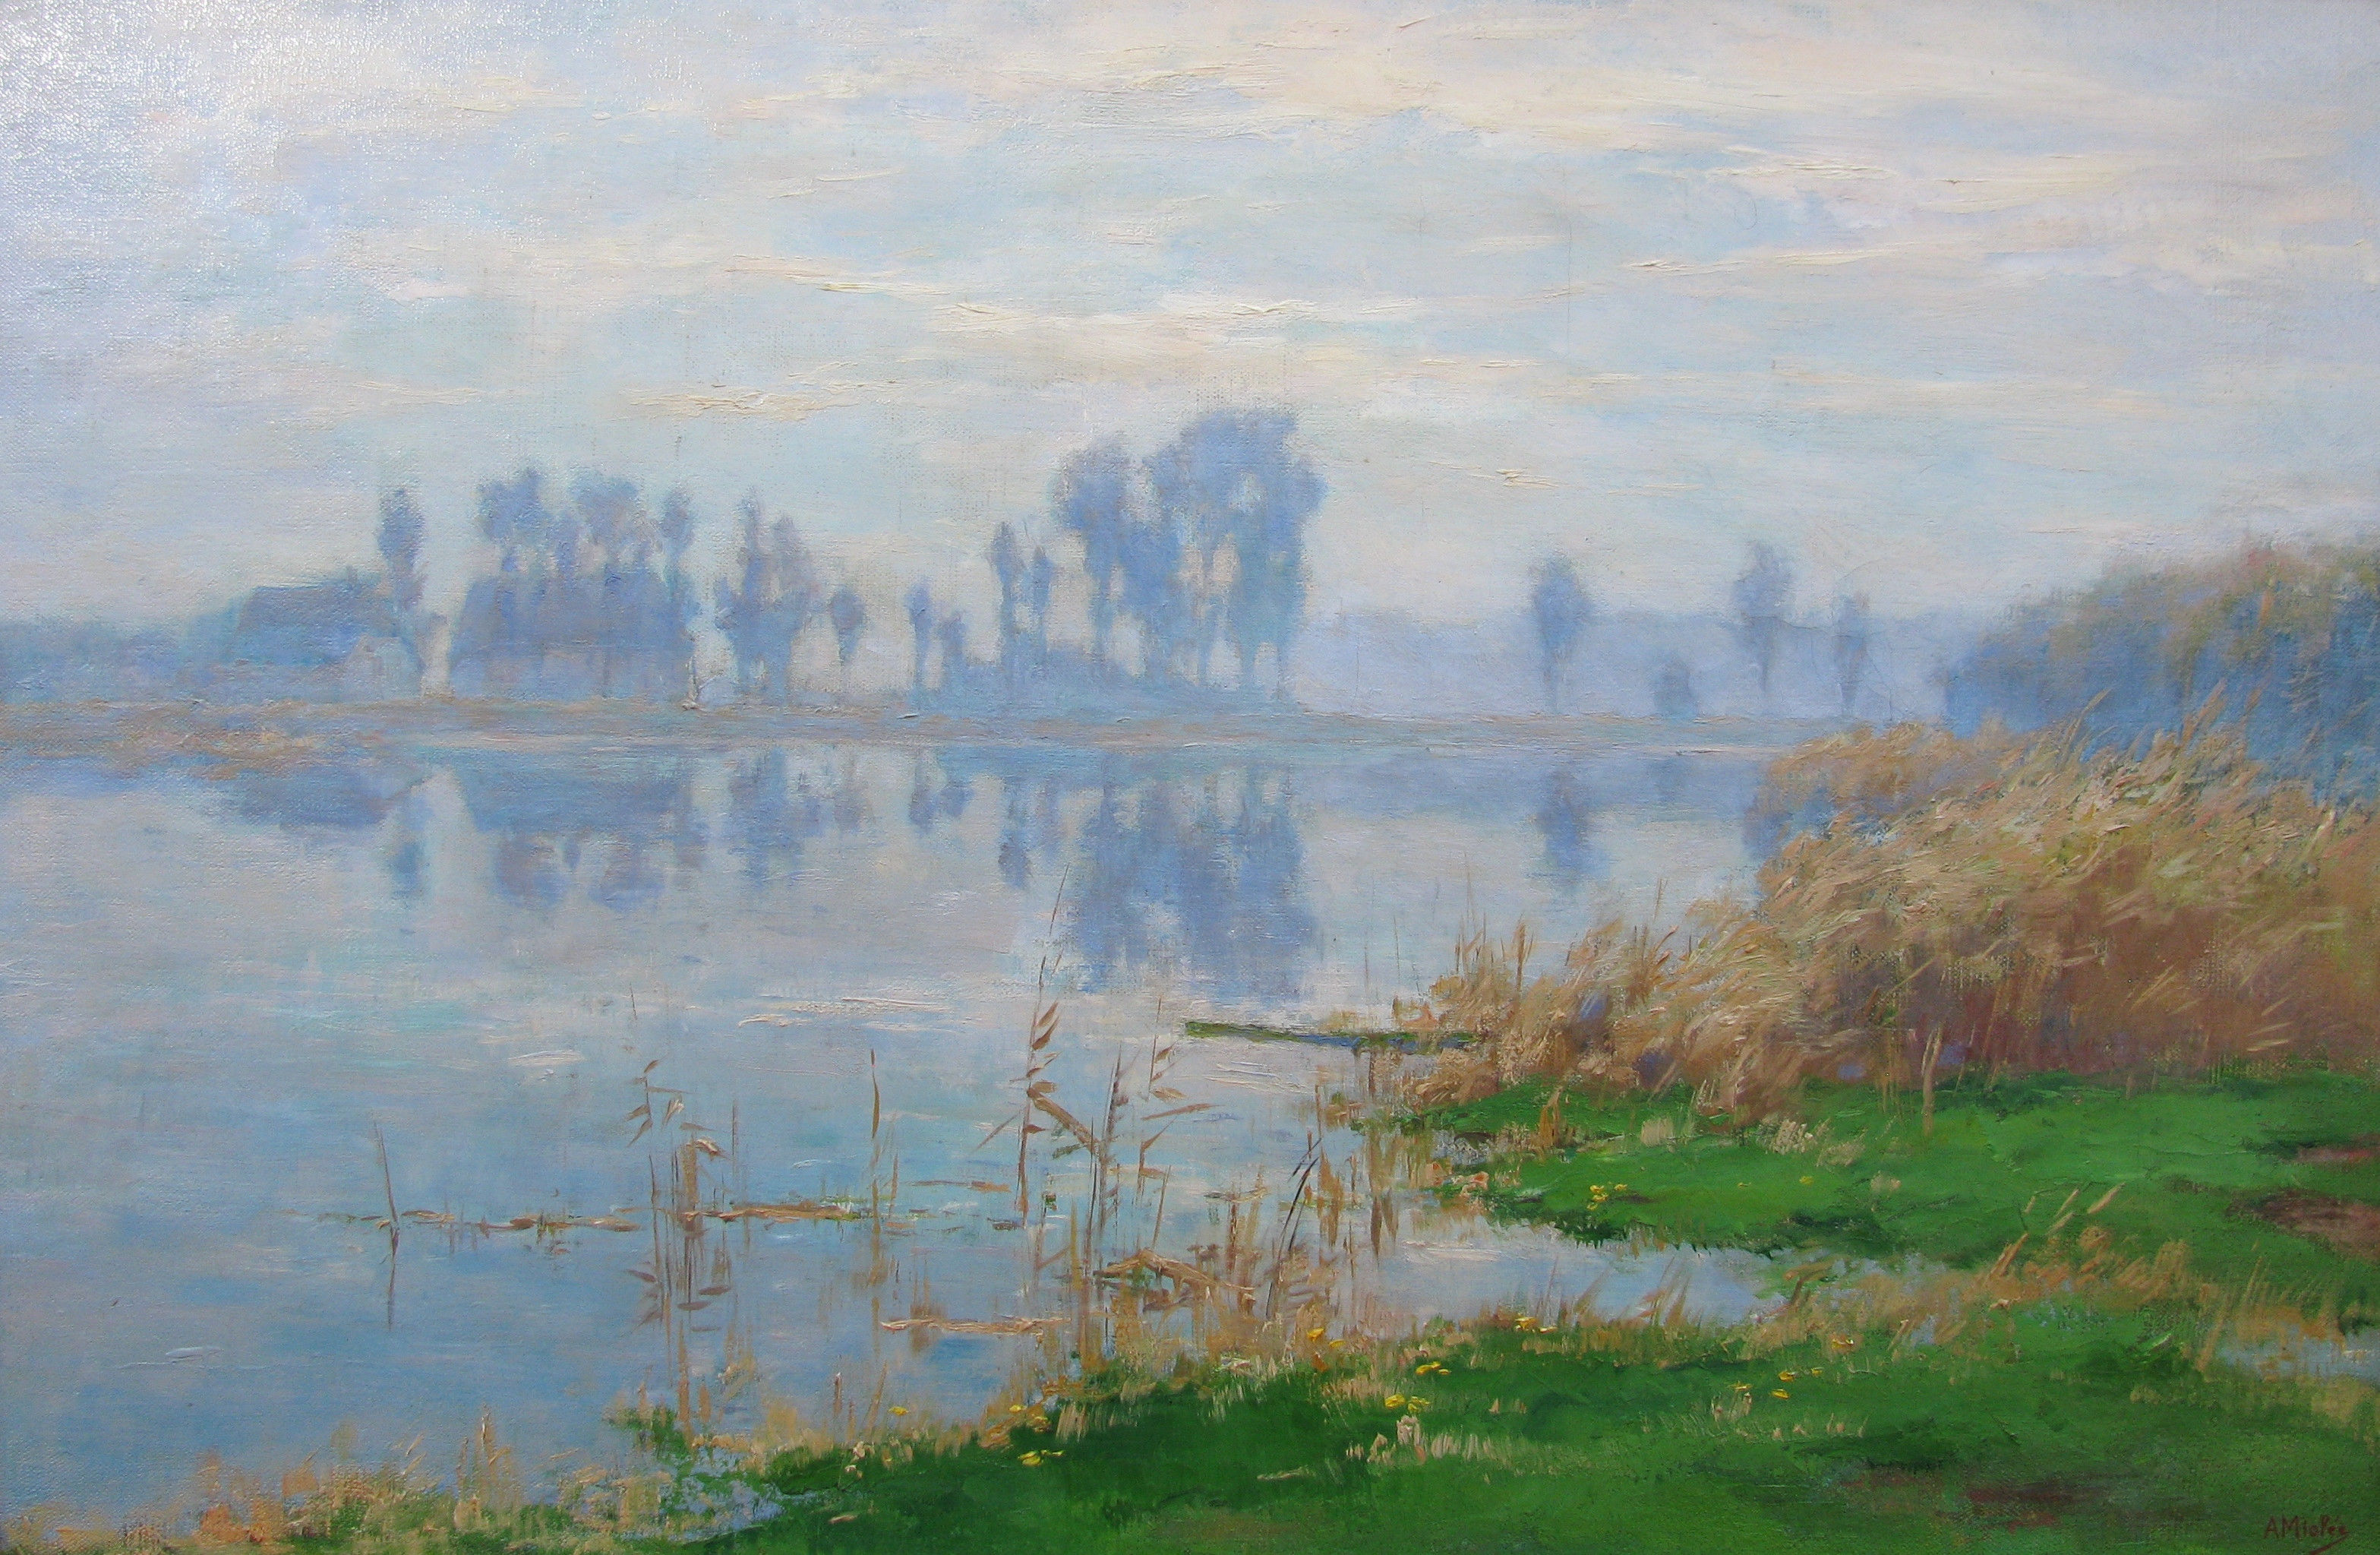 Adrianus Miolée painting Foggy sunlight on the Vecht